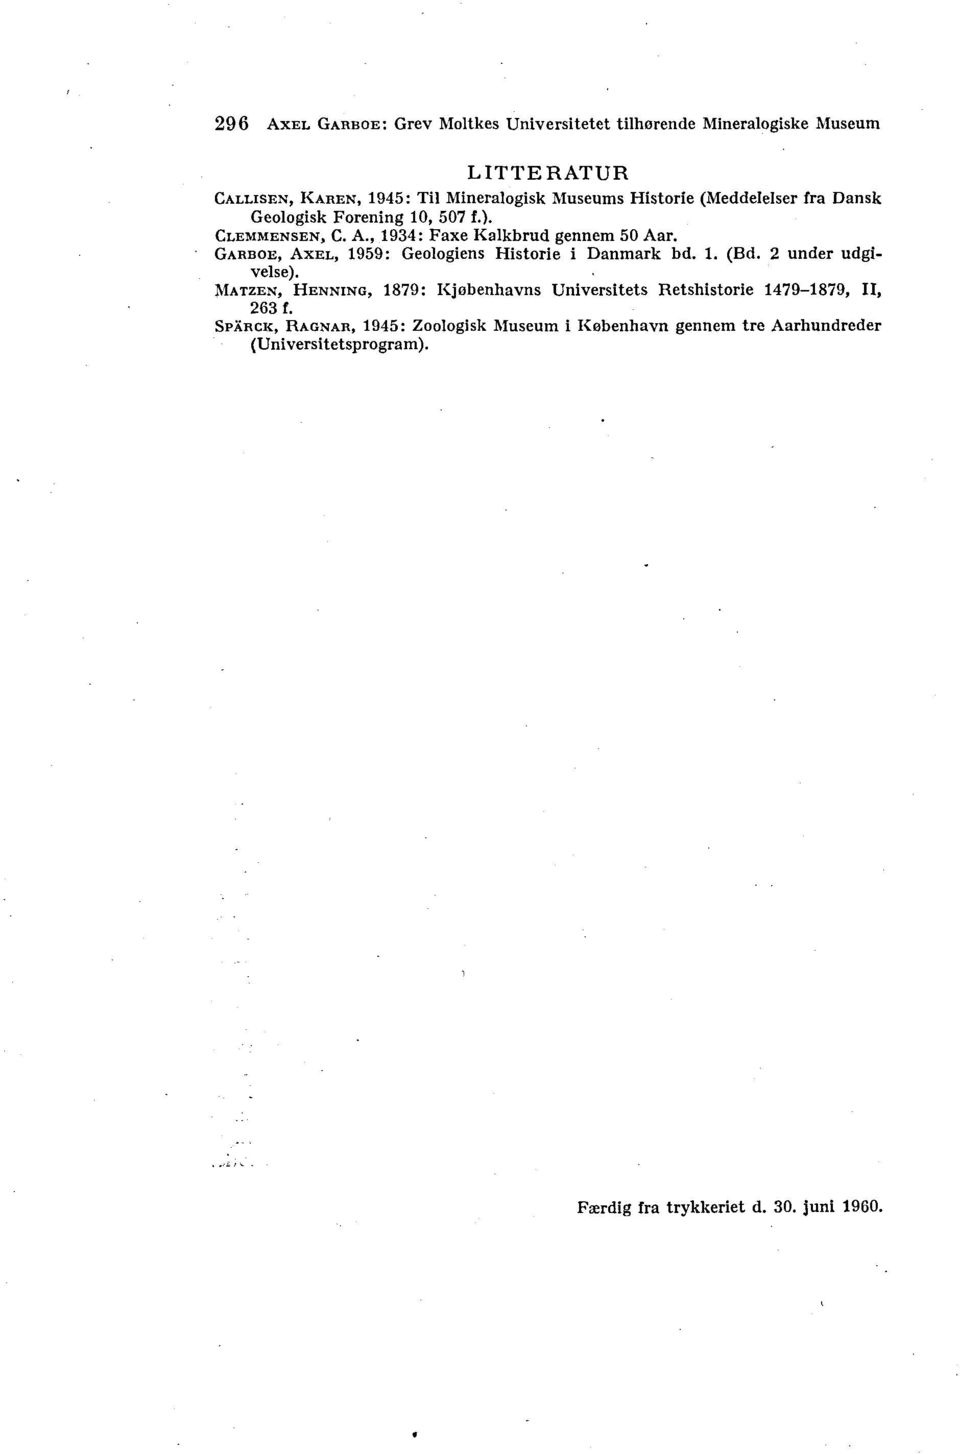 GARBOE, AXEL, 1959: Geologiens Historie i Danmark bd. 1. (Bd. 2 under udgivelse).